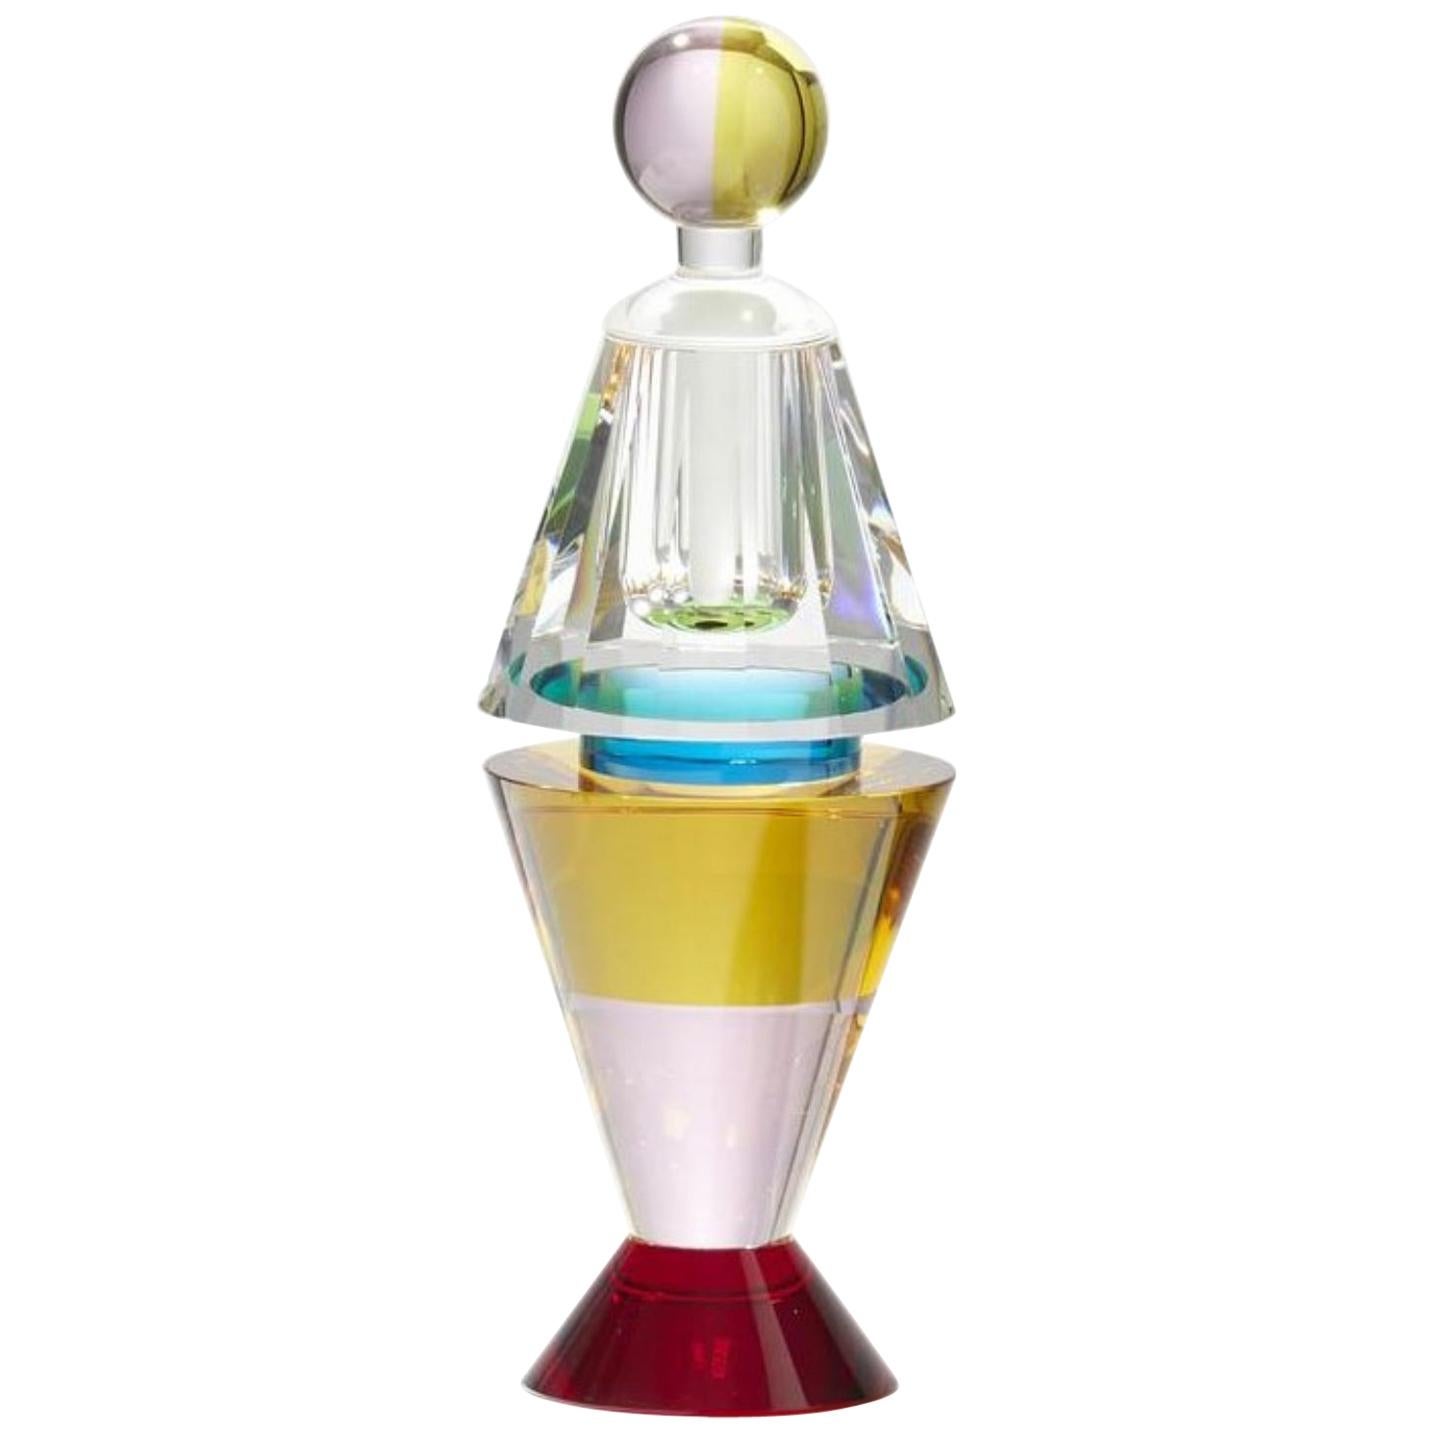 Flacon de parfum Grand Lauderlale en cristal finement taillé à la main